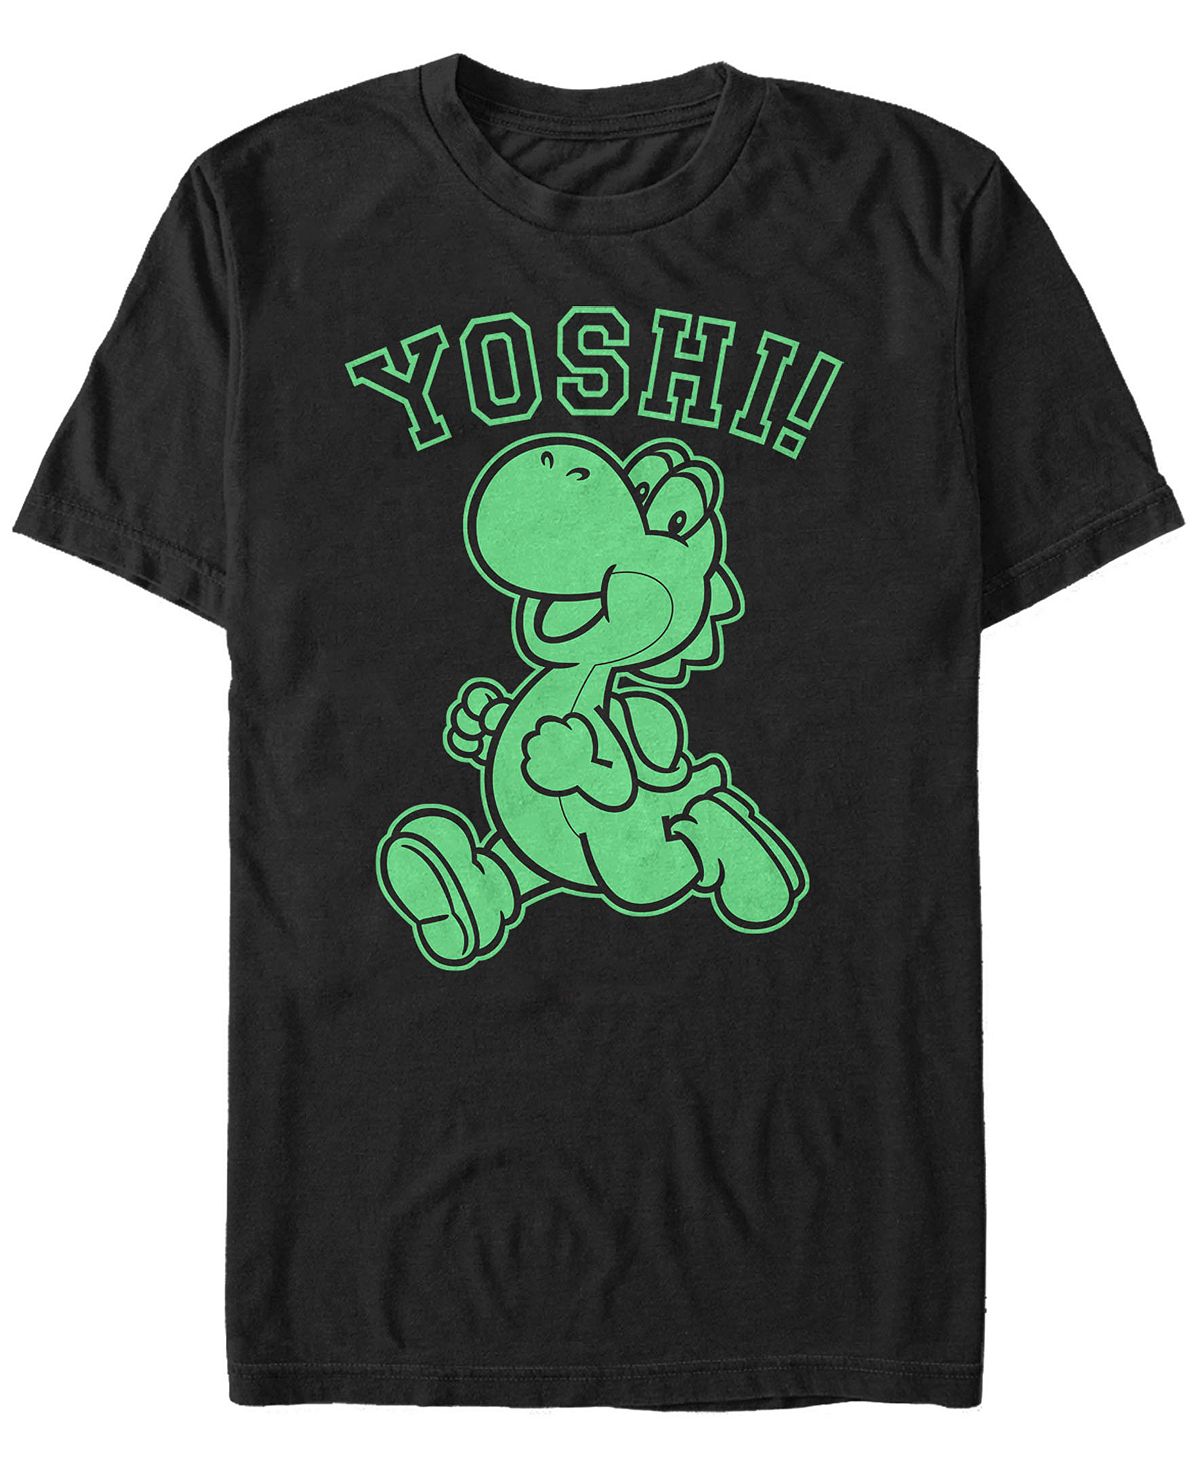 Мужская футболка с коротким рукавом nintendo super mario running yoshi Fifth Sun, черный